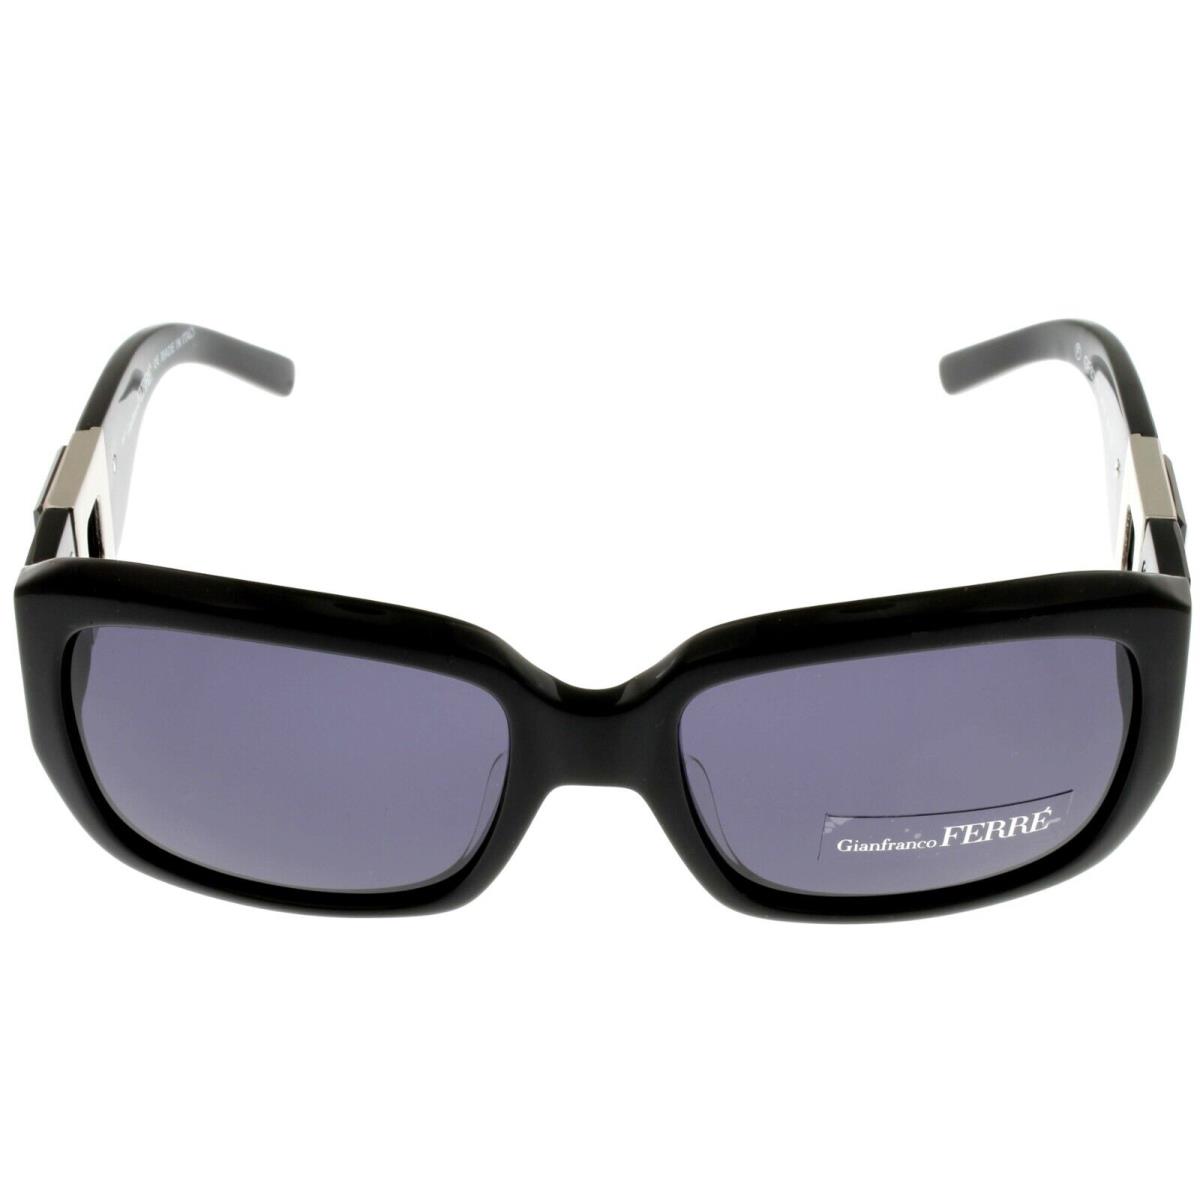 Gianfranco Ferre Sunglasses Women Black Grey Rectangular GF87701